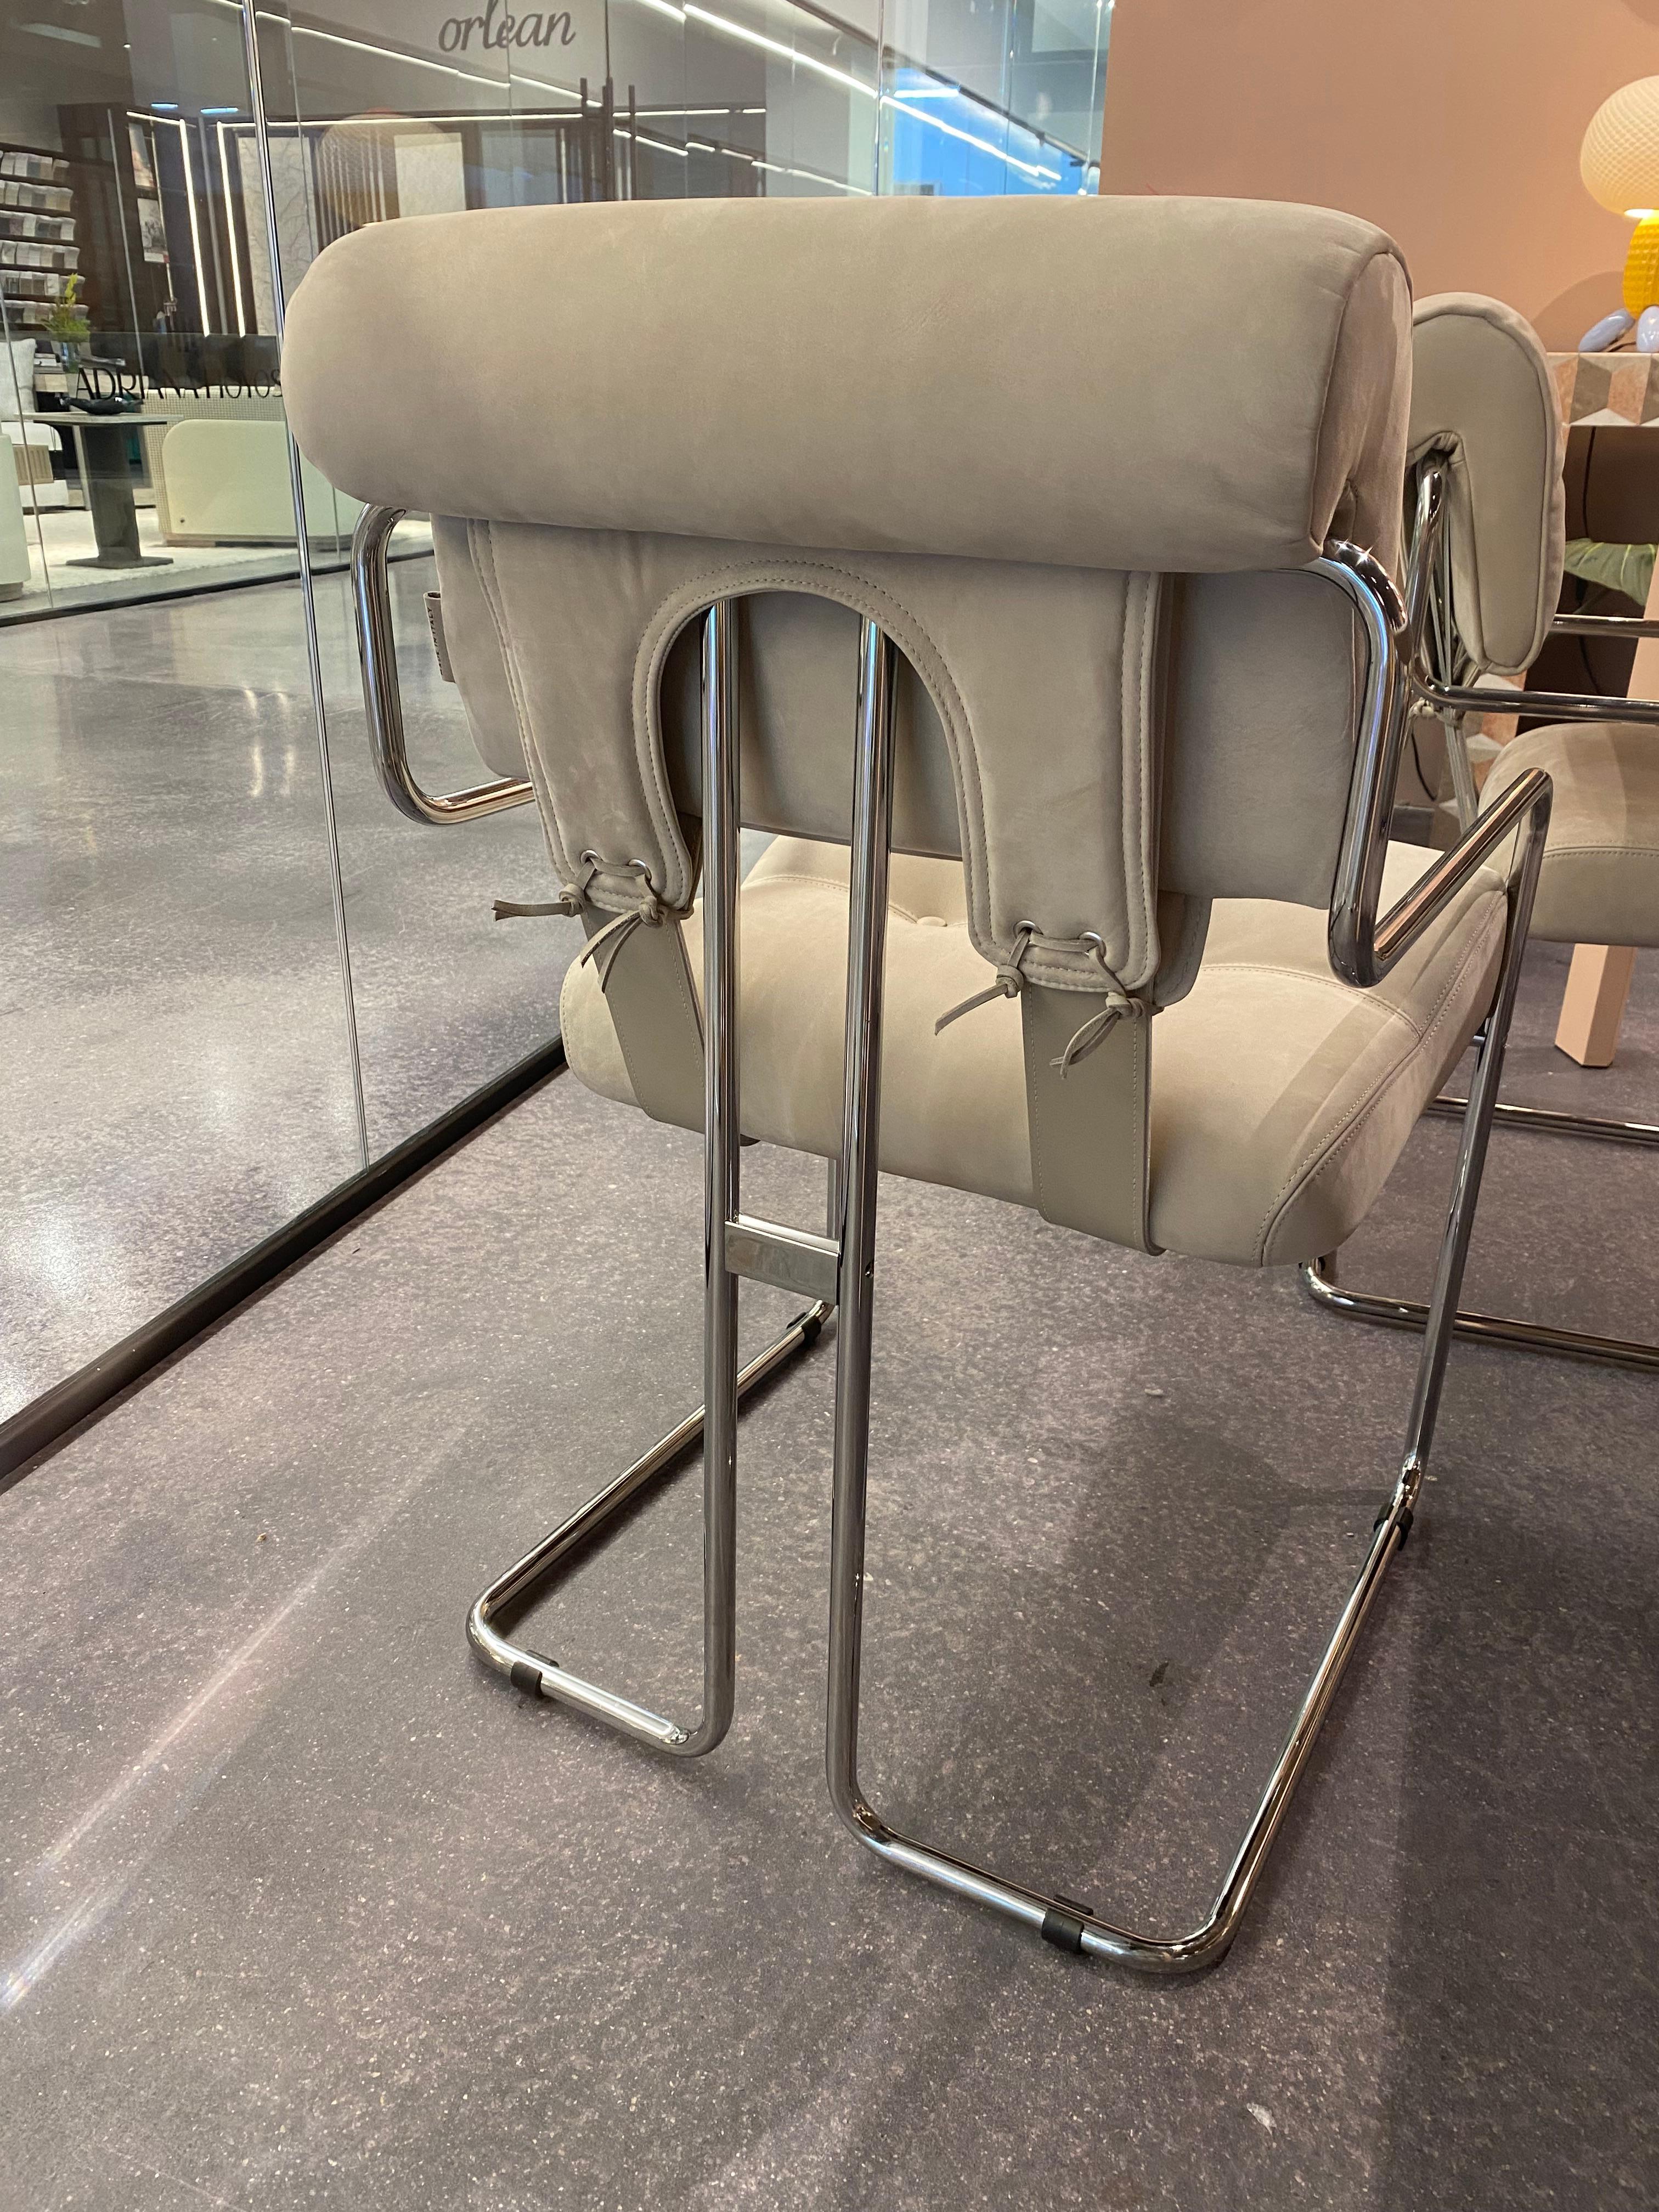 La chaise Tucroma, un design emblématique de Guido Faleschini datant de 1971.  Ces reproductions sont revêtues d'un daim taupe clair et dotées d'un cadre tubulaire chromé.  Incroyablement doux et confortable.  Magnifique design des années 1970. 